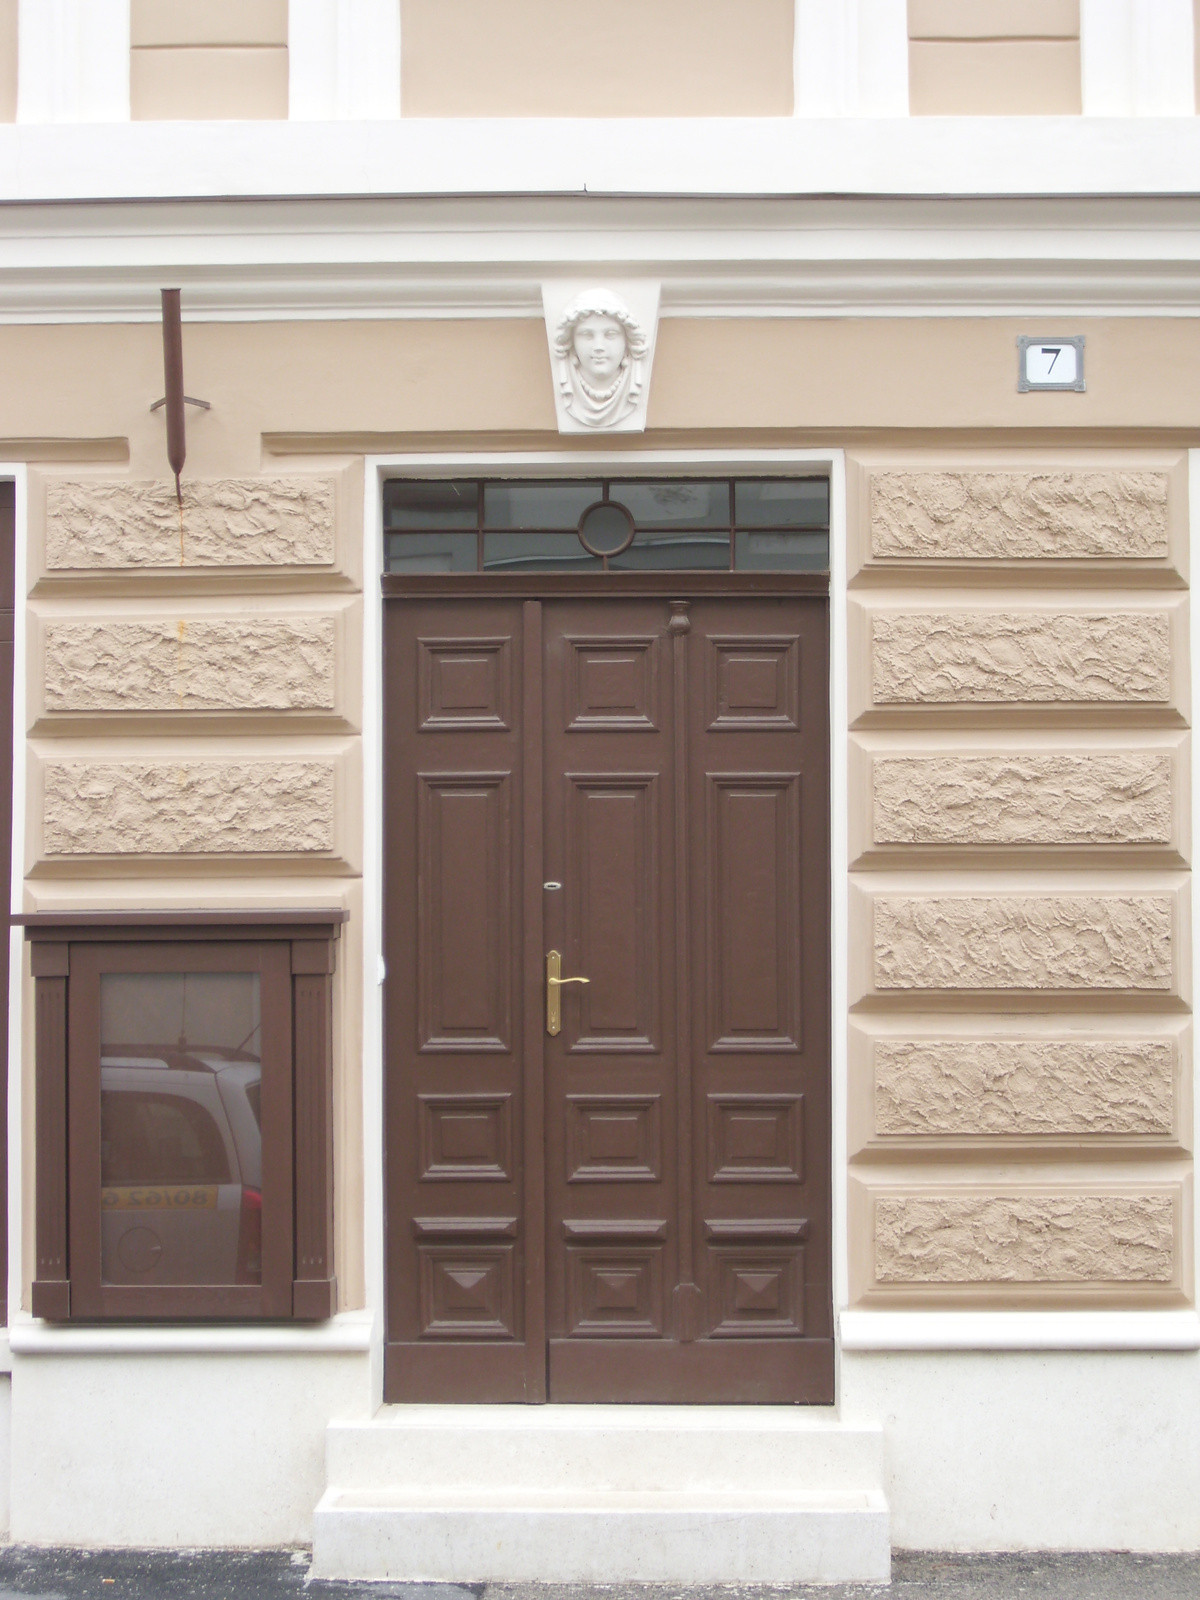 Szombathely, Kossuth u. 7, kétemeletes lakóház 4